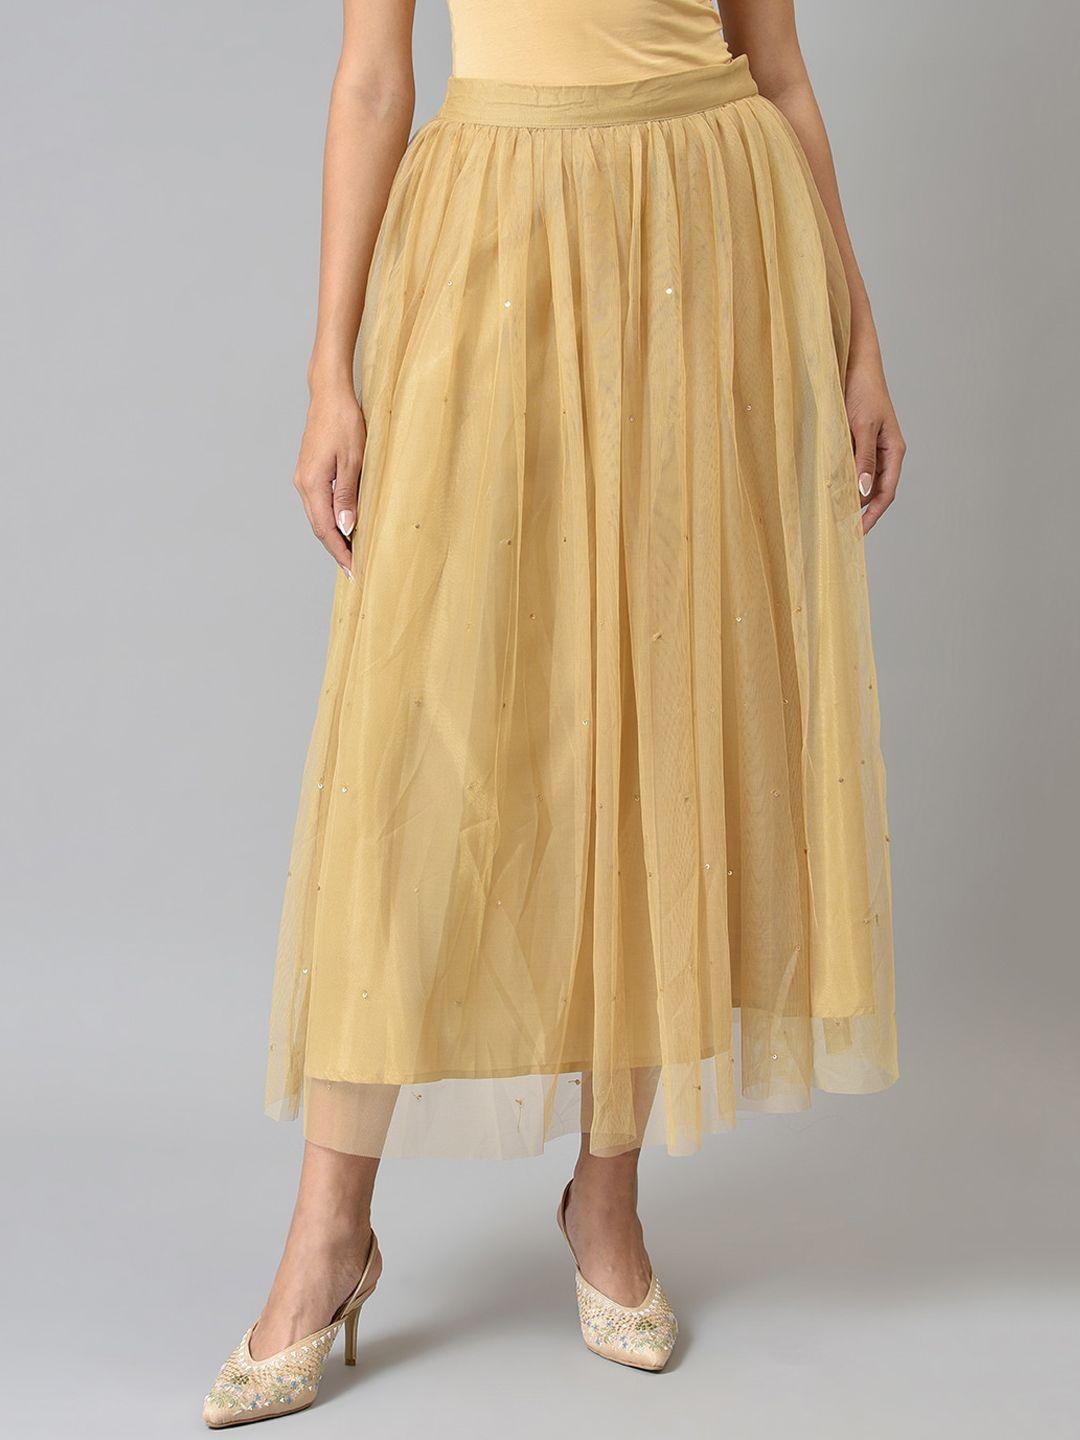 w-women-gold-sequined-midi-skirt